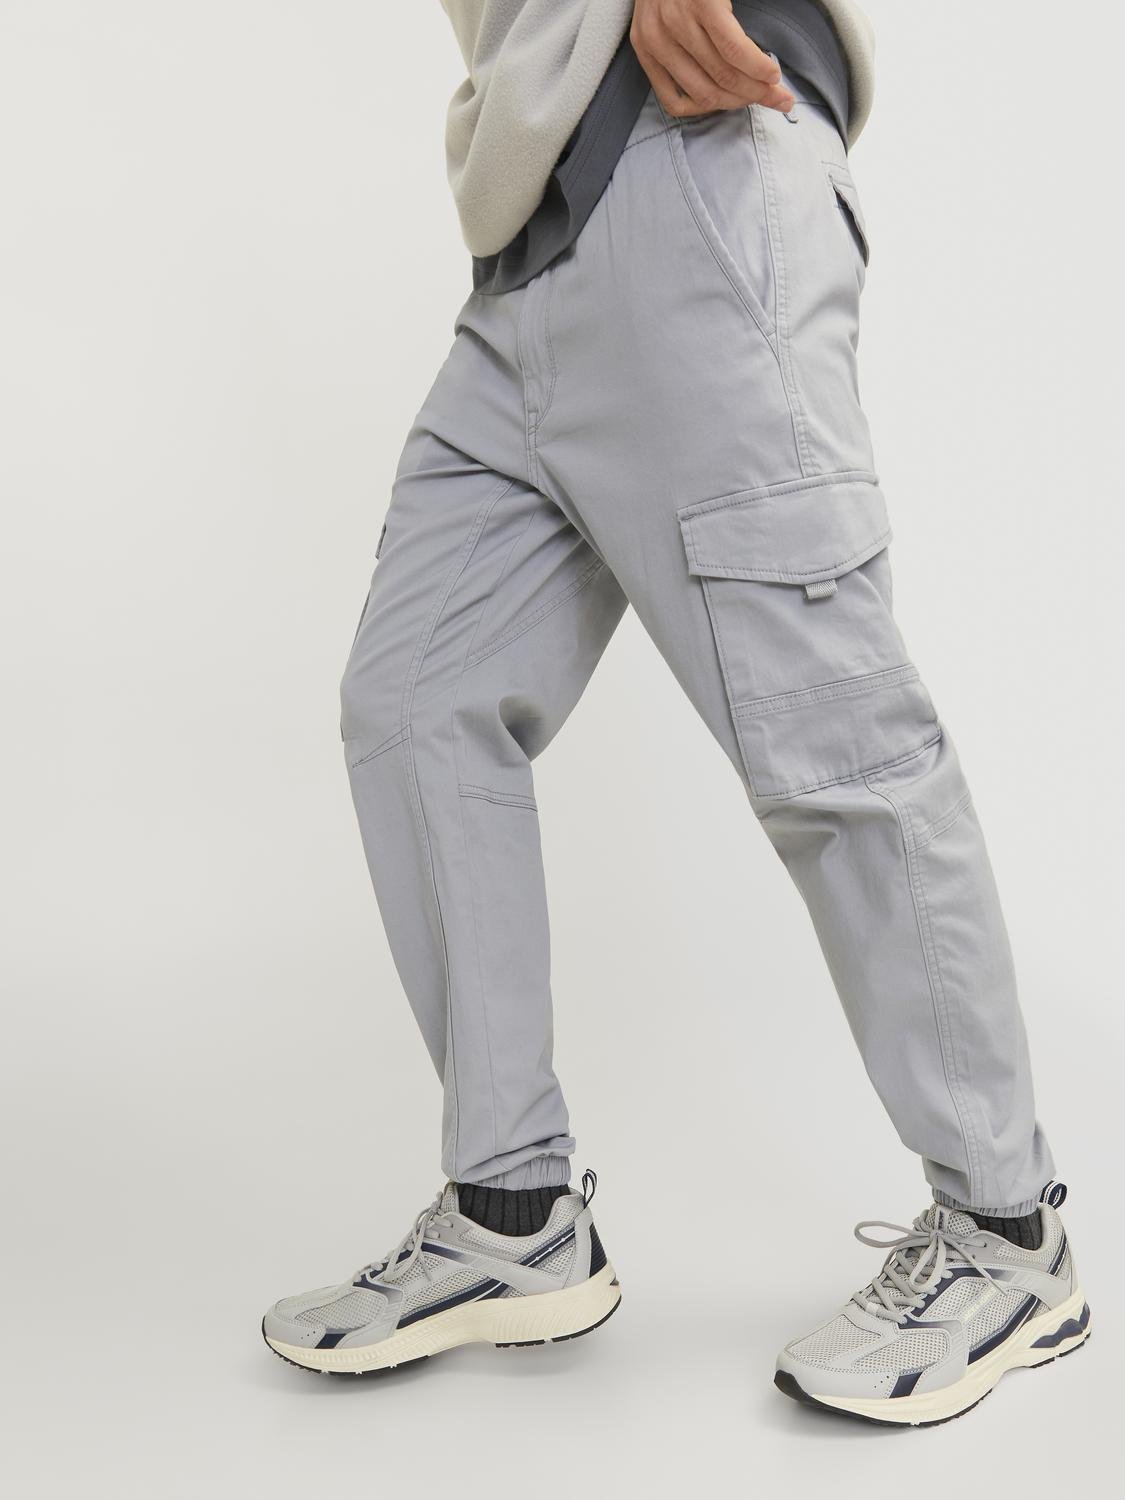 JPSTPAUL Pants - Ultimate Grey